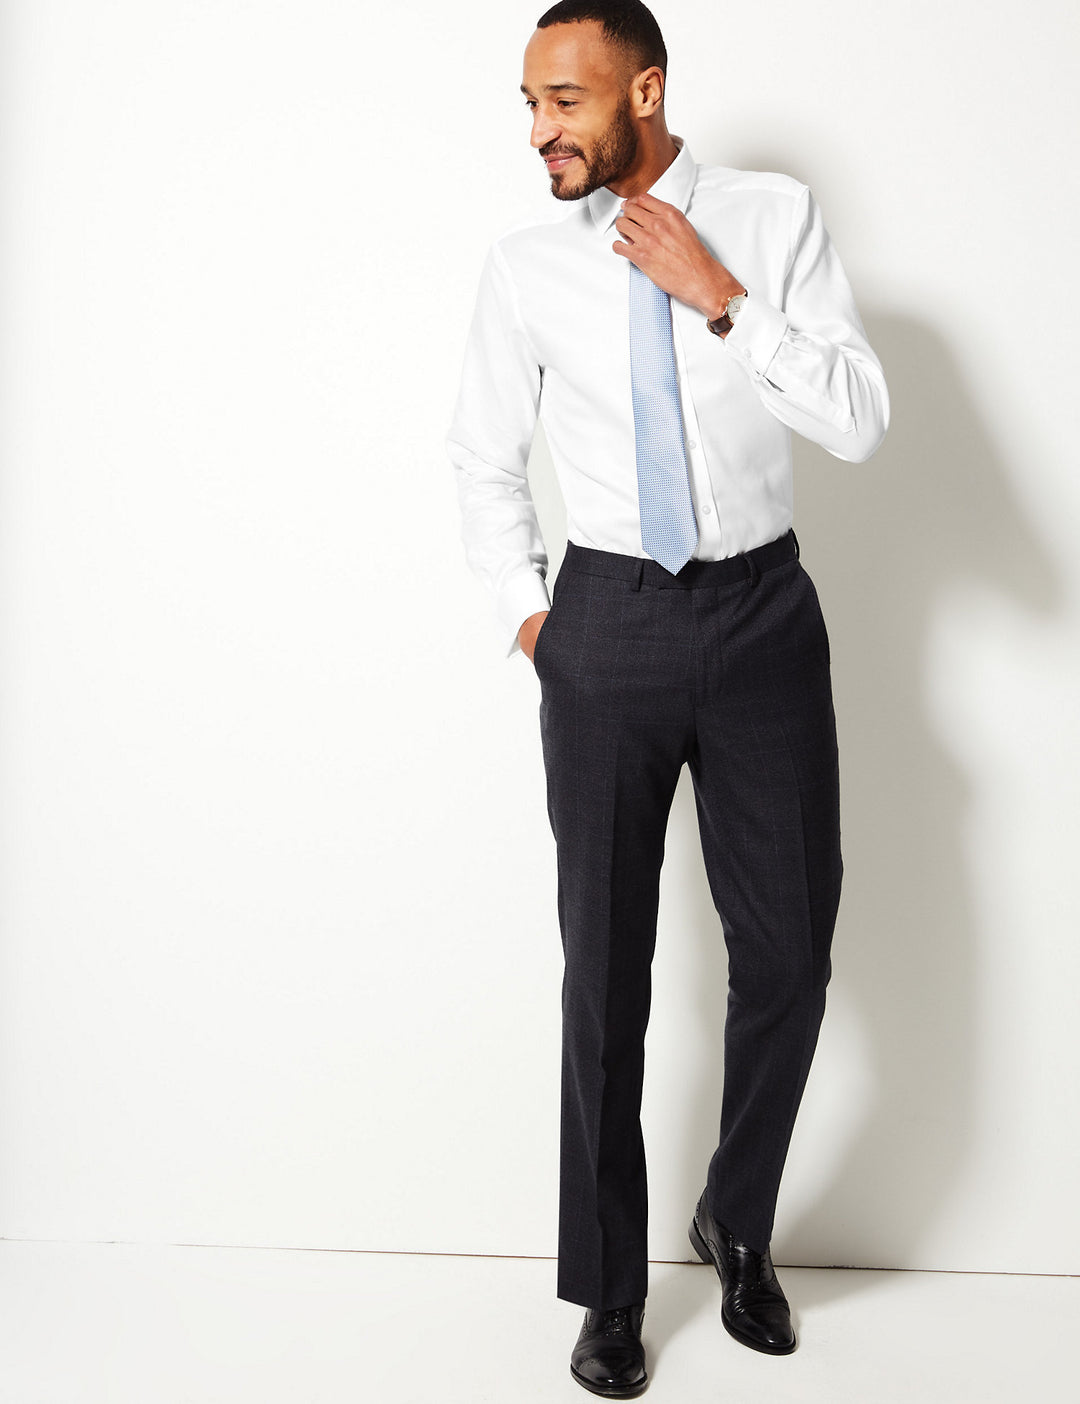 M&S Mens Formal (Savile Row ) Plain Shirt -T11/4955Q